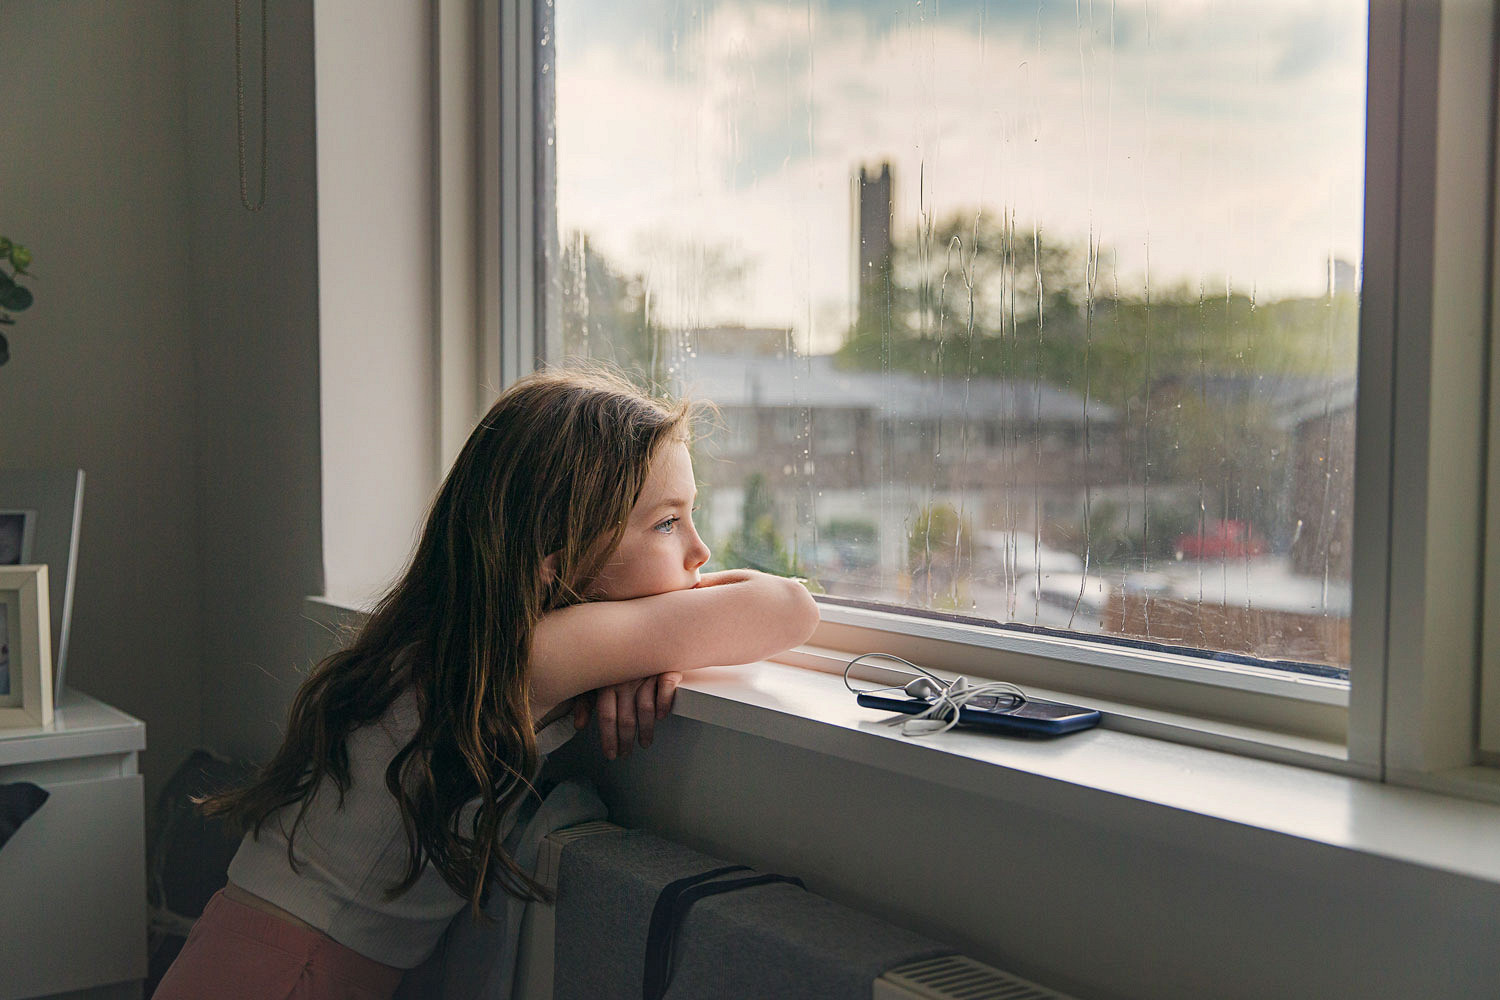 Daughter calling. Богатые дети в депрессии. Ребенок смотрит устало в окно. Депрессия у детей. Girl looking out the Window.